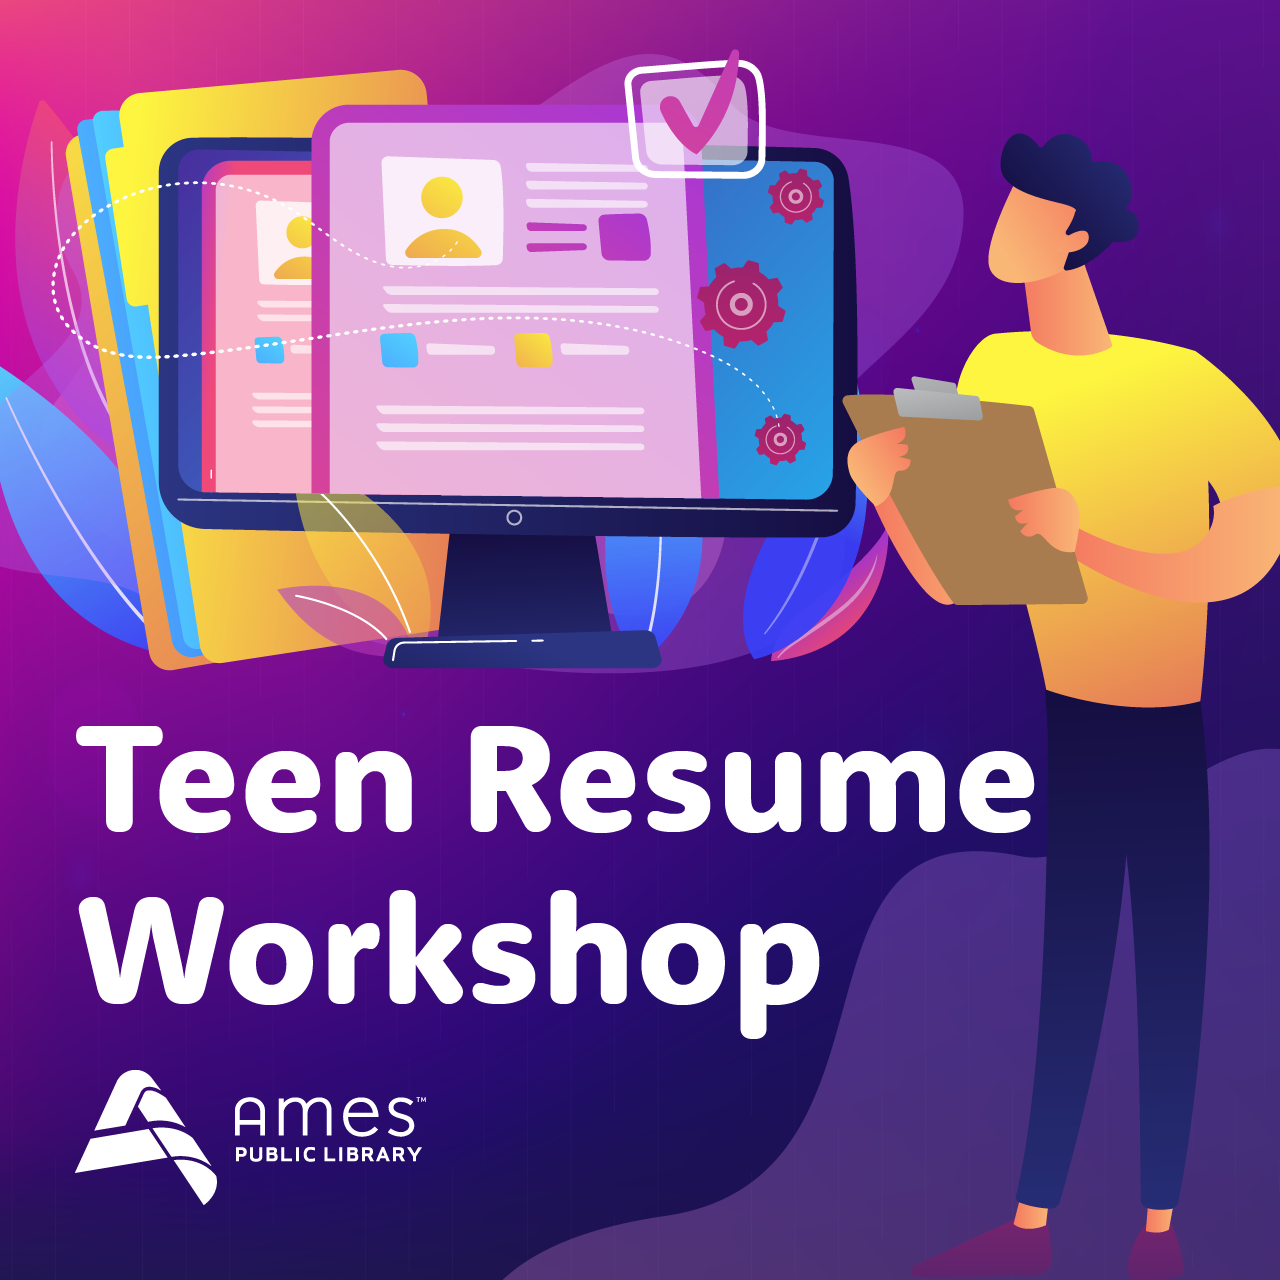 Teen Resume Workshop